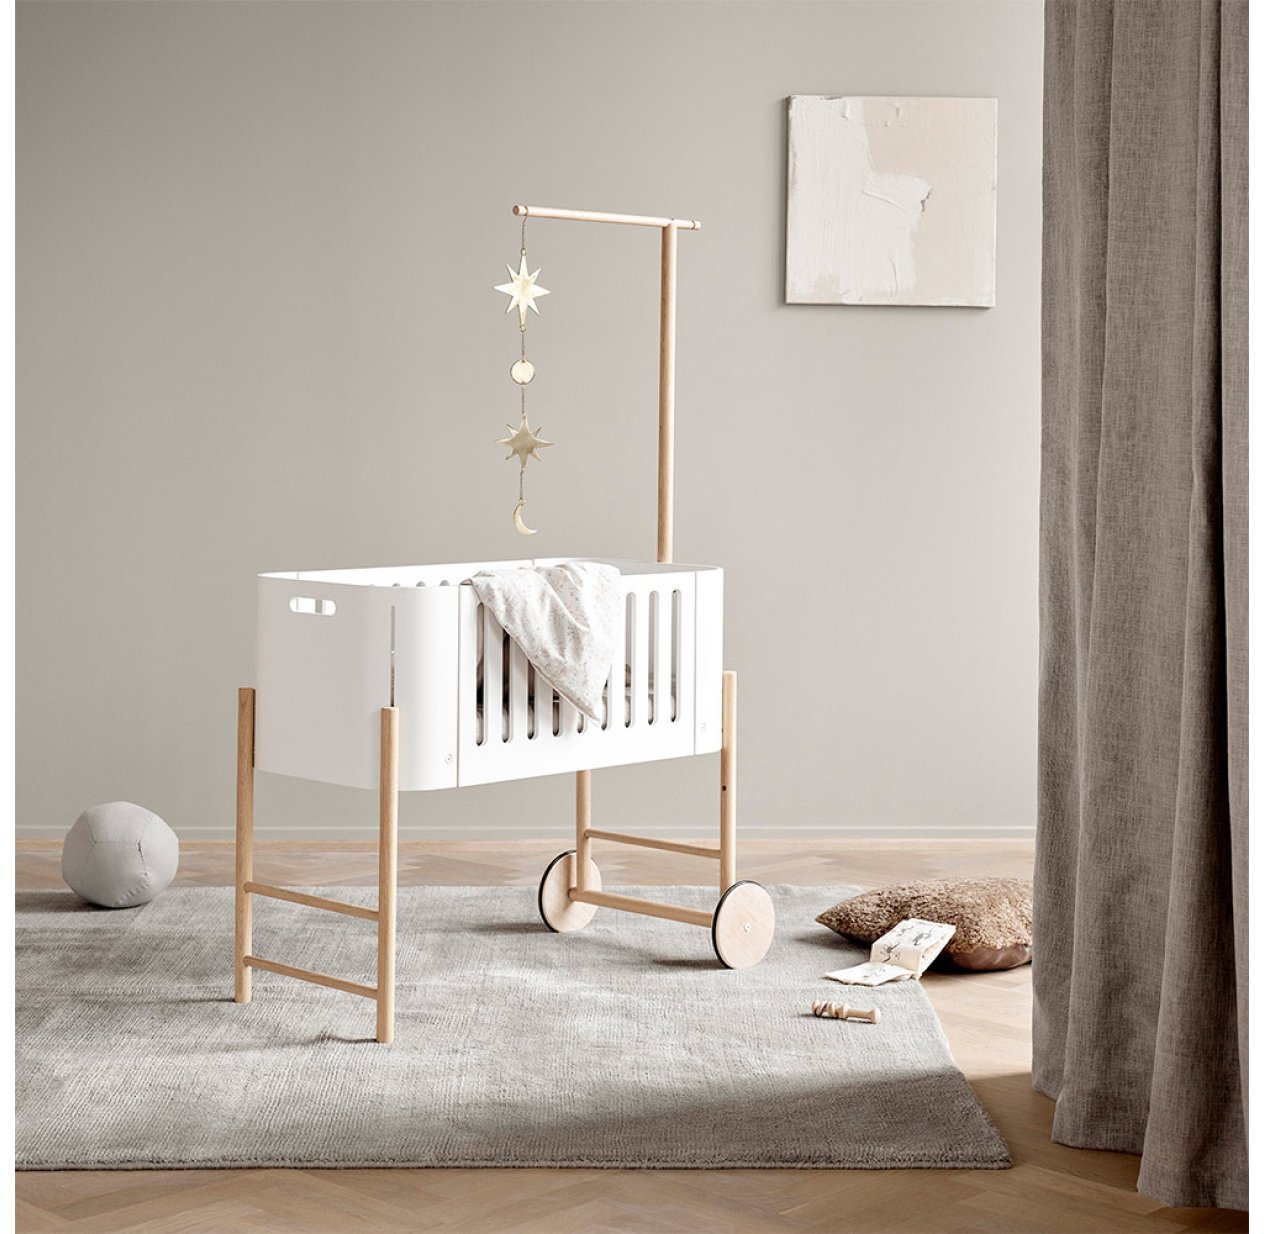 Berceau Cododo évolutif Wood - Blanc/Chêne Oliver Furniture pour chambre  enfant - Les Enfants du Design